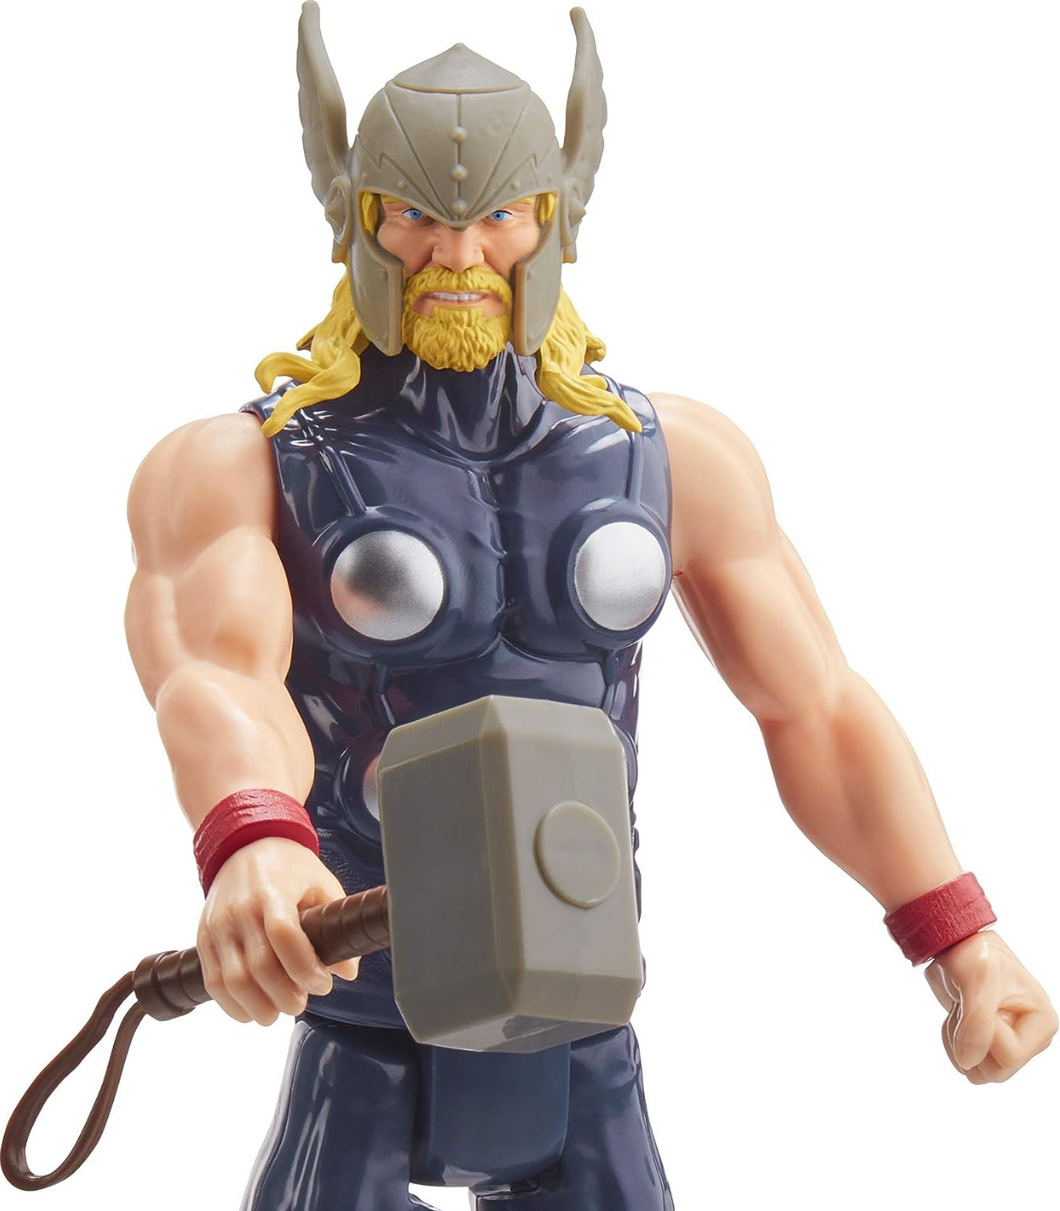 Marvel Avengers Titan Heros Series Thor